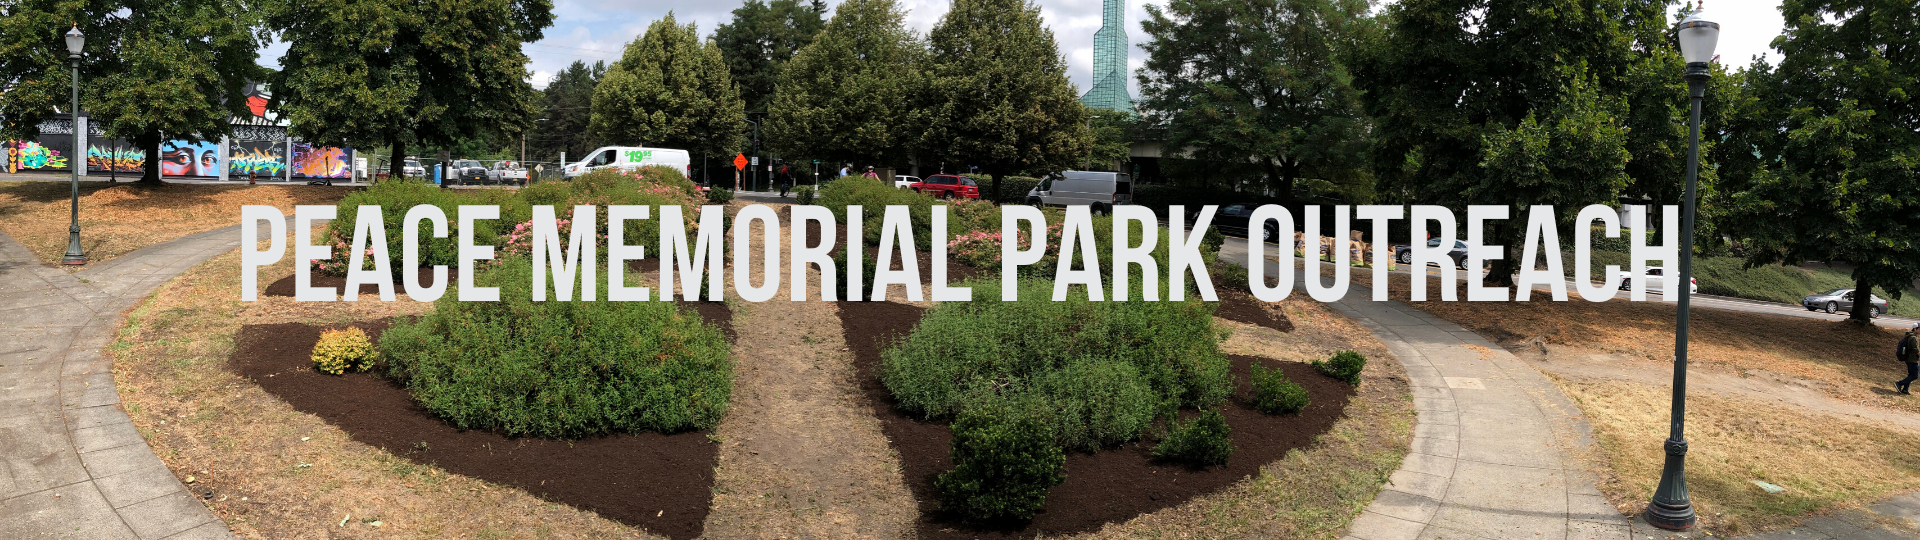 Peace Memorial Park Outreach